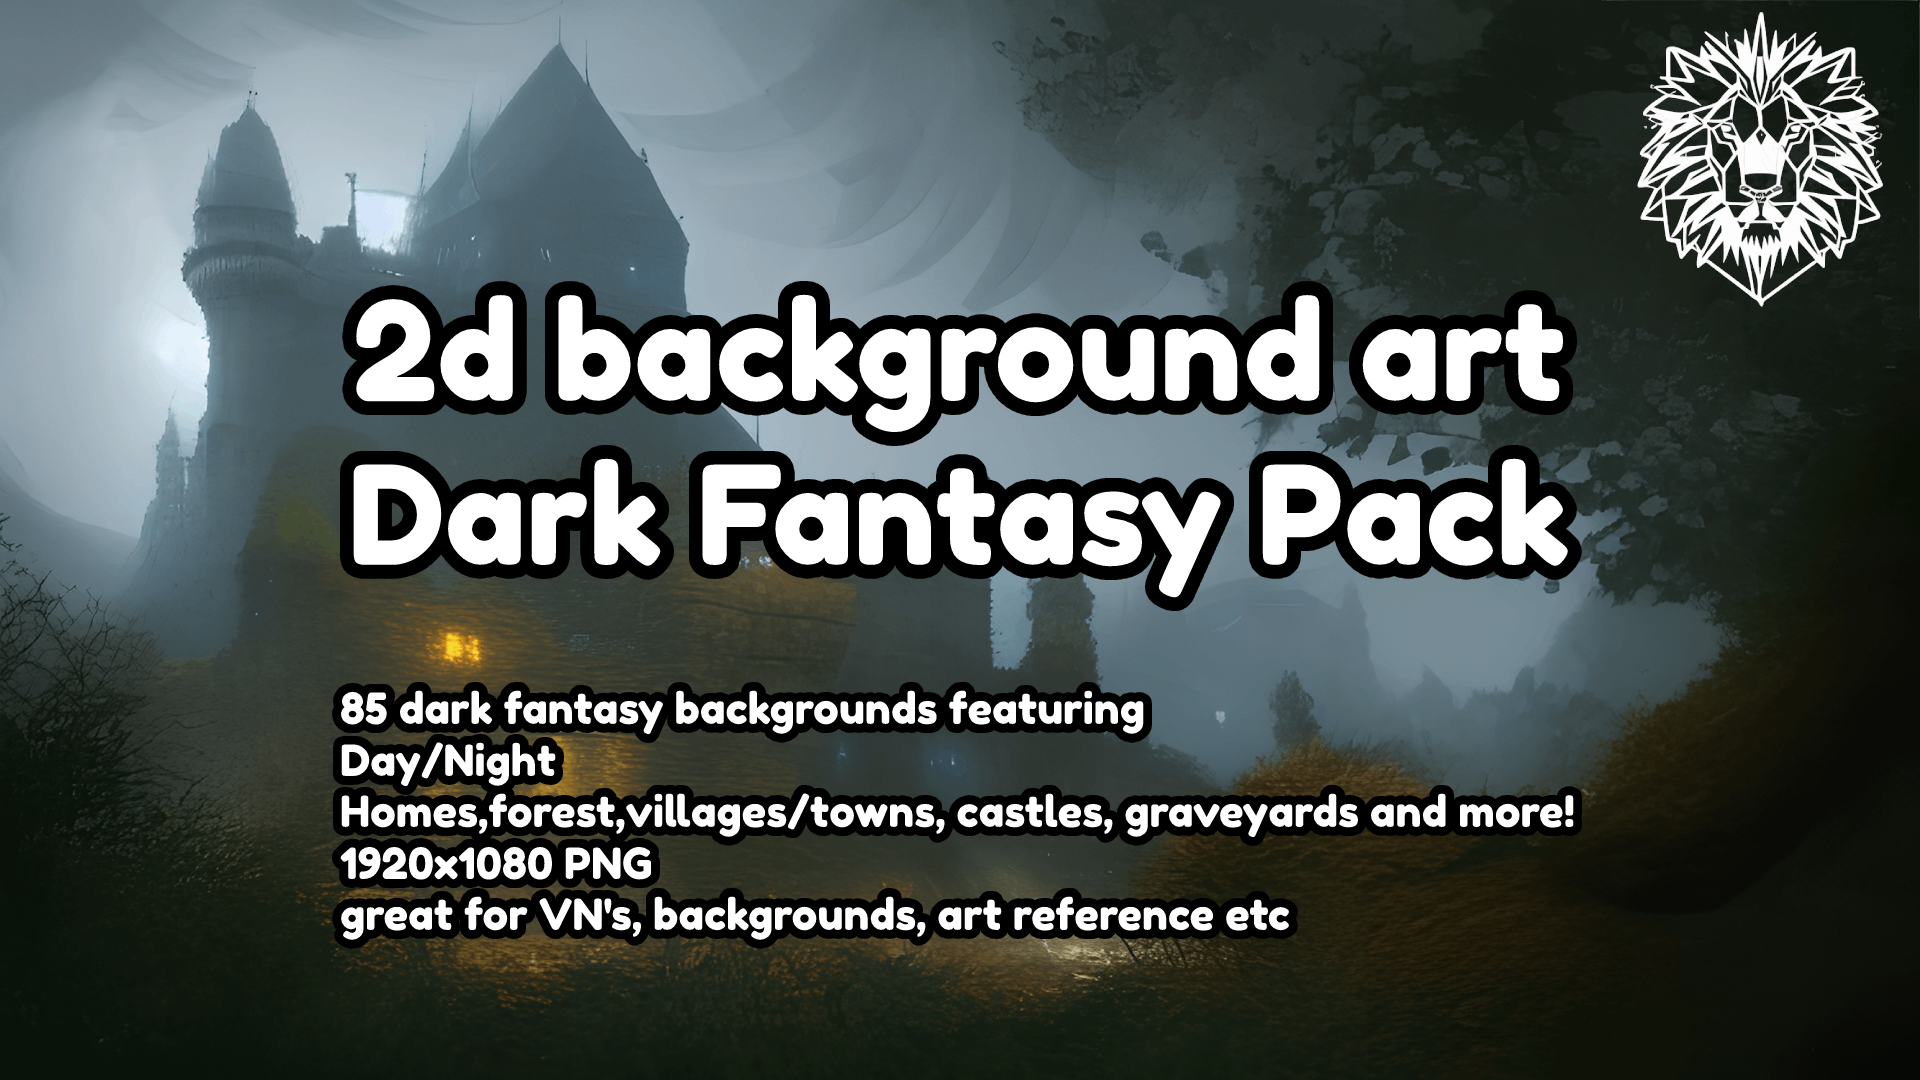 Dark Fantasy Pack Backgrounds 2d Art Pack